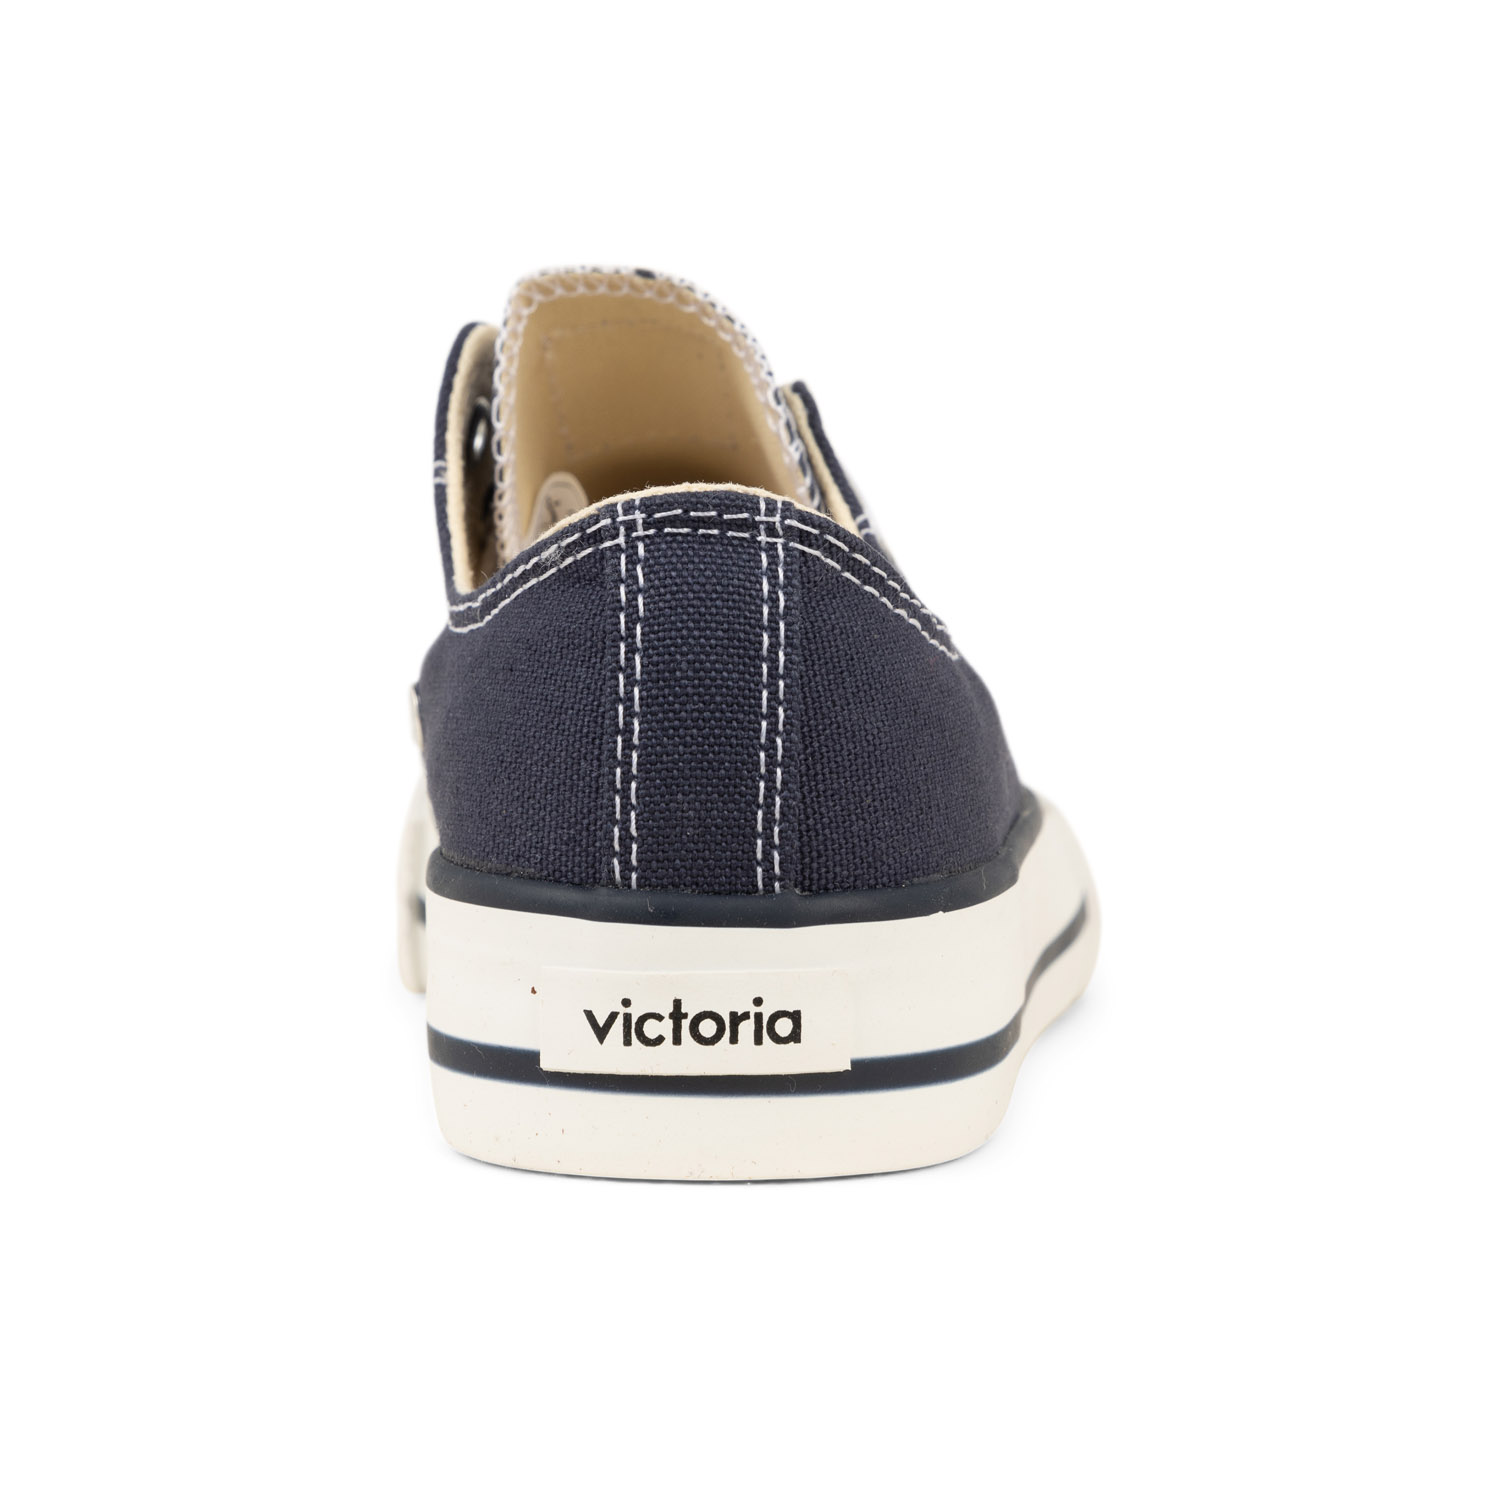 03 - TRIBU LONA - VICTORIA  - Chaussures à lacets - Textile